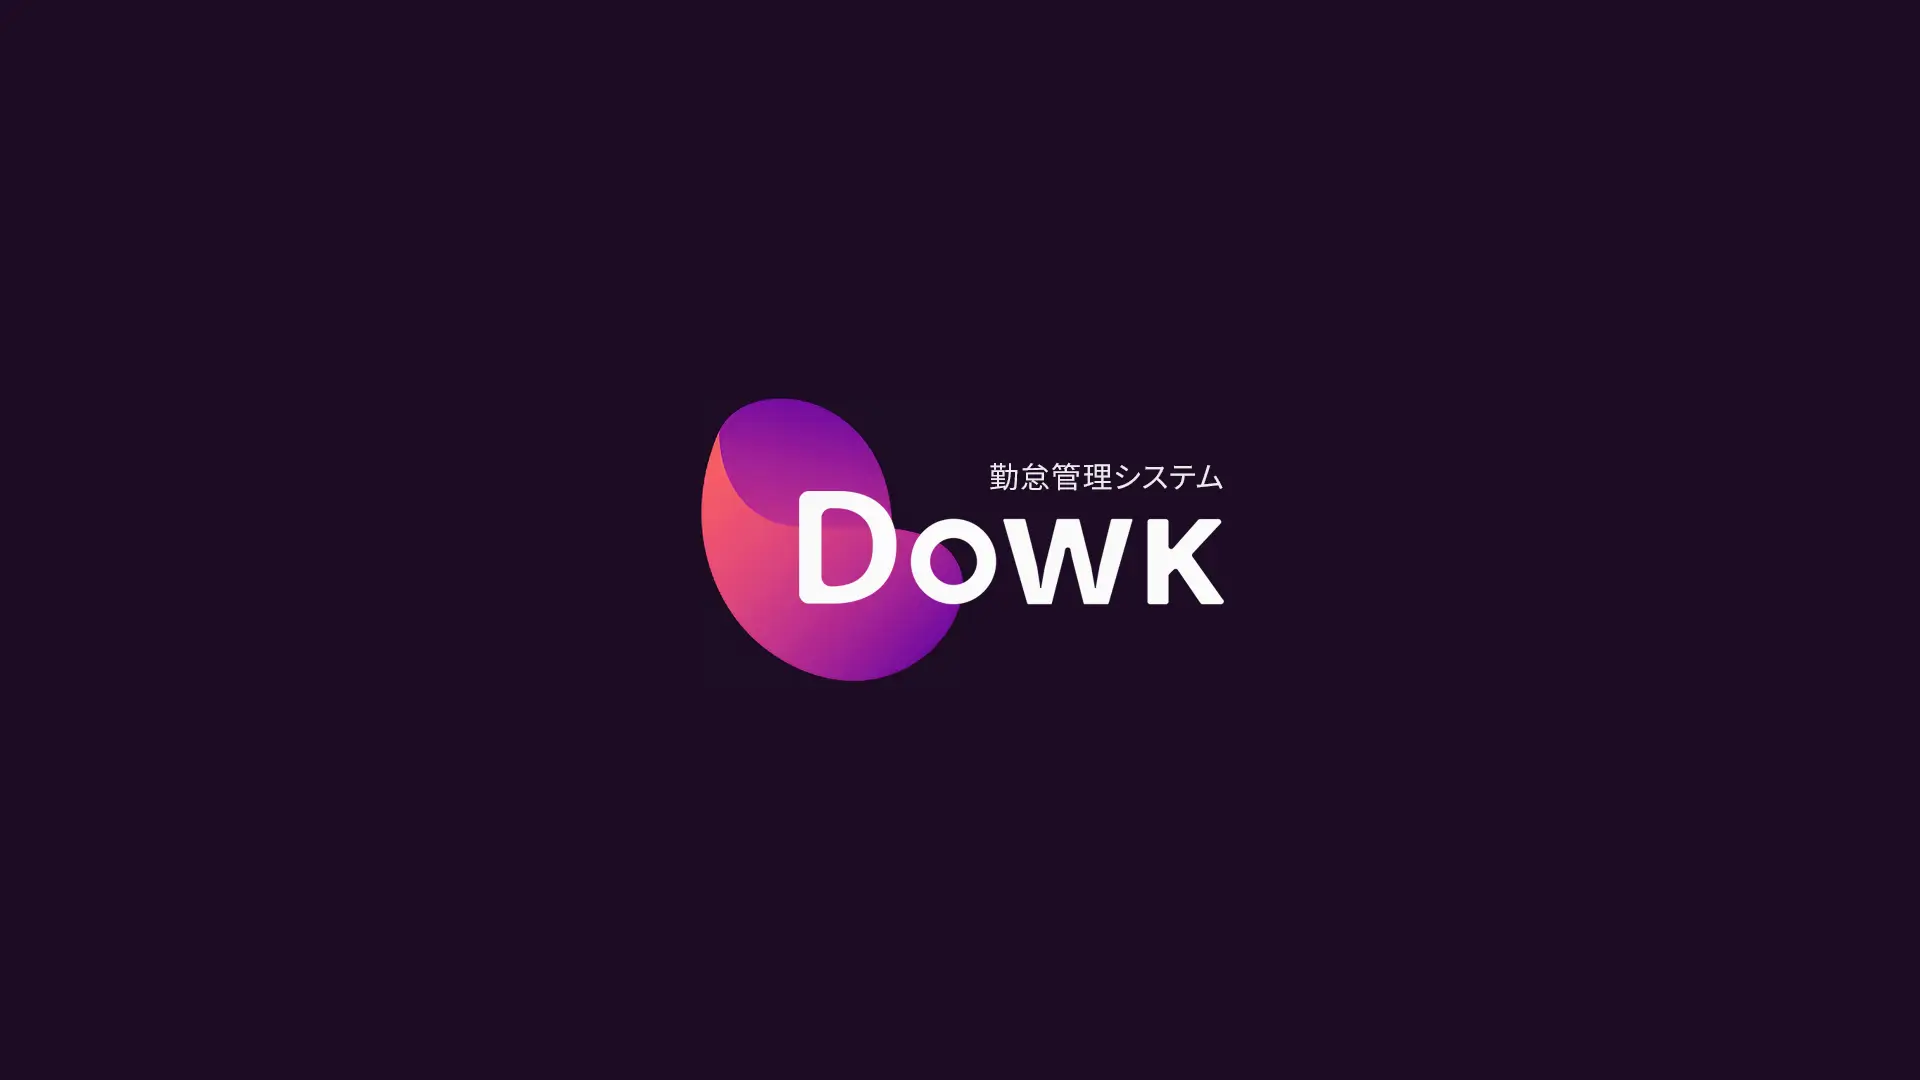 Dowk app